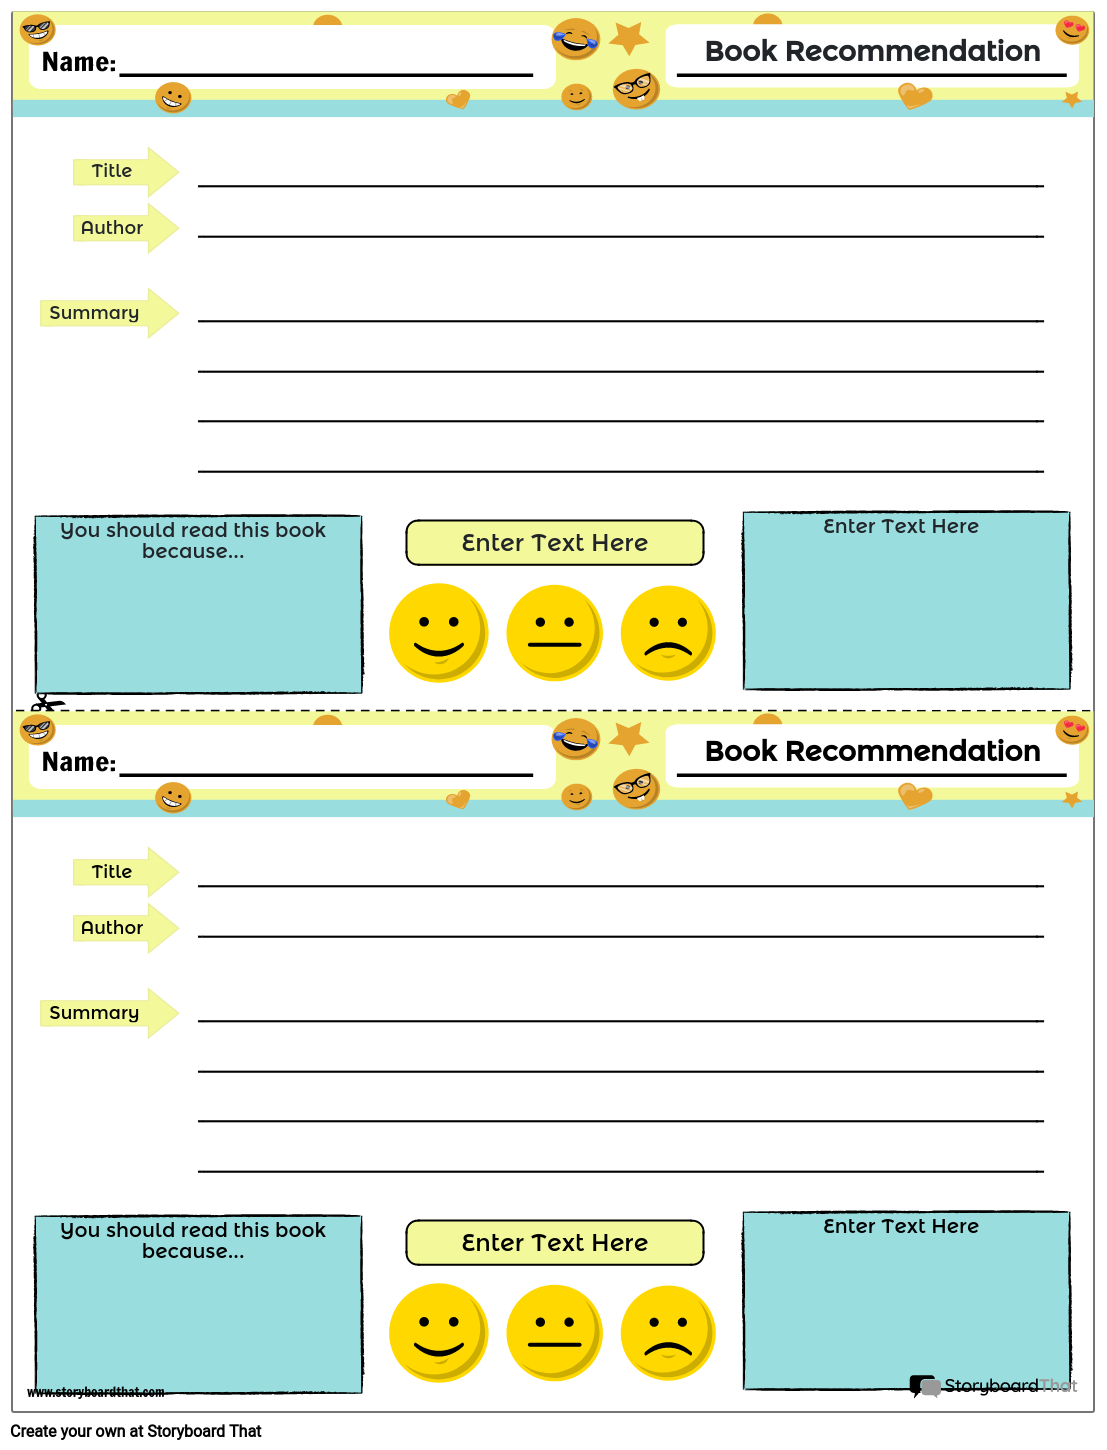 book-recommendation-1-storyboard-von-worksheet-templates